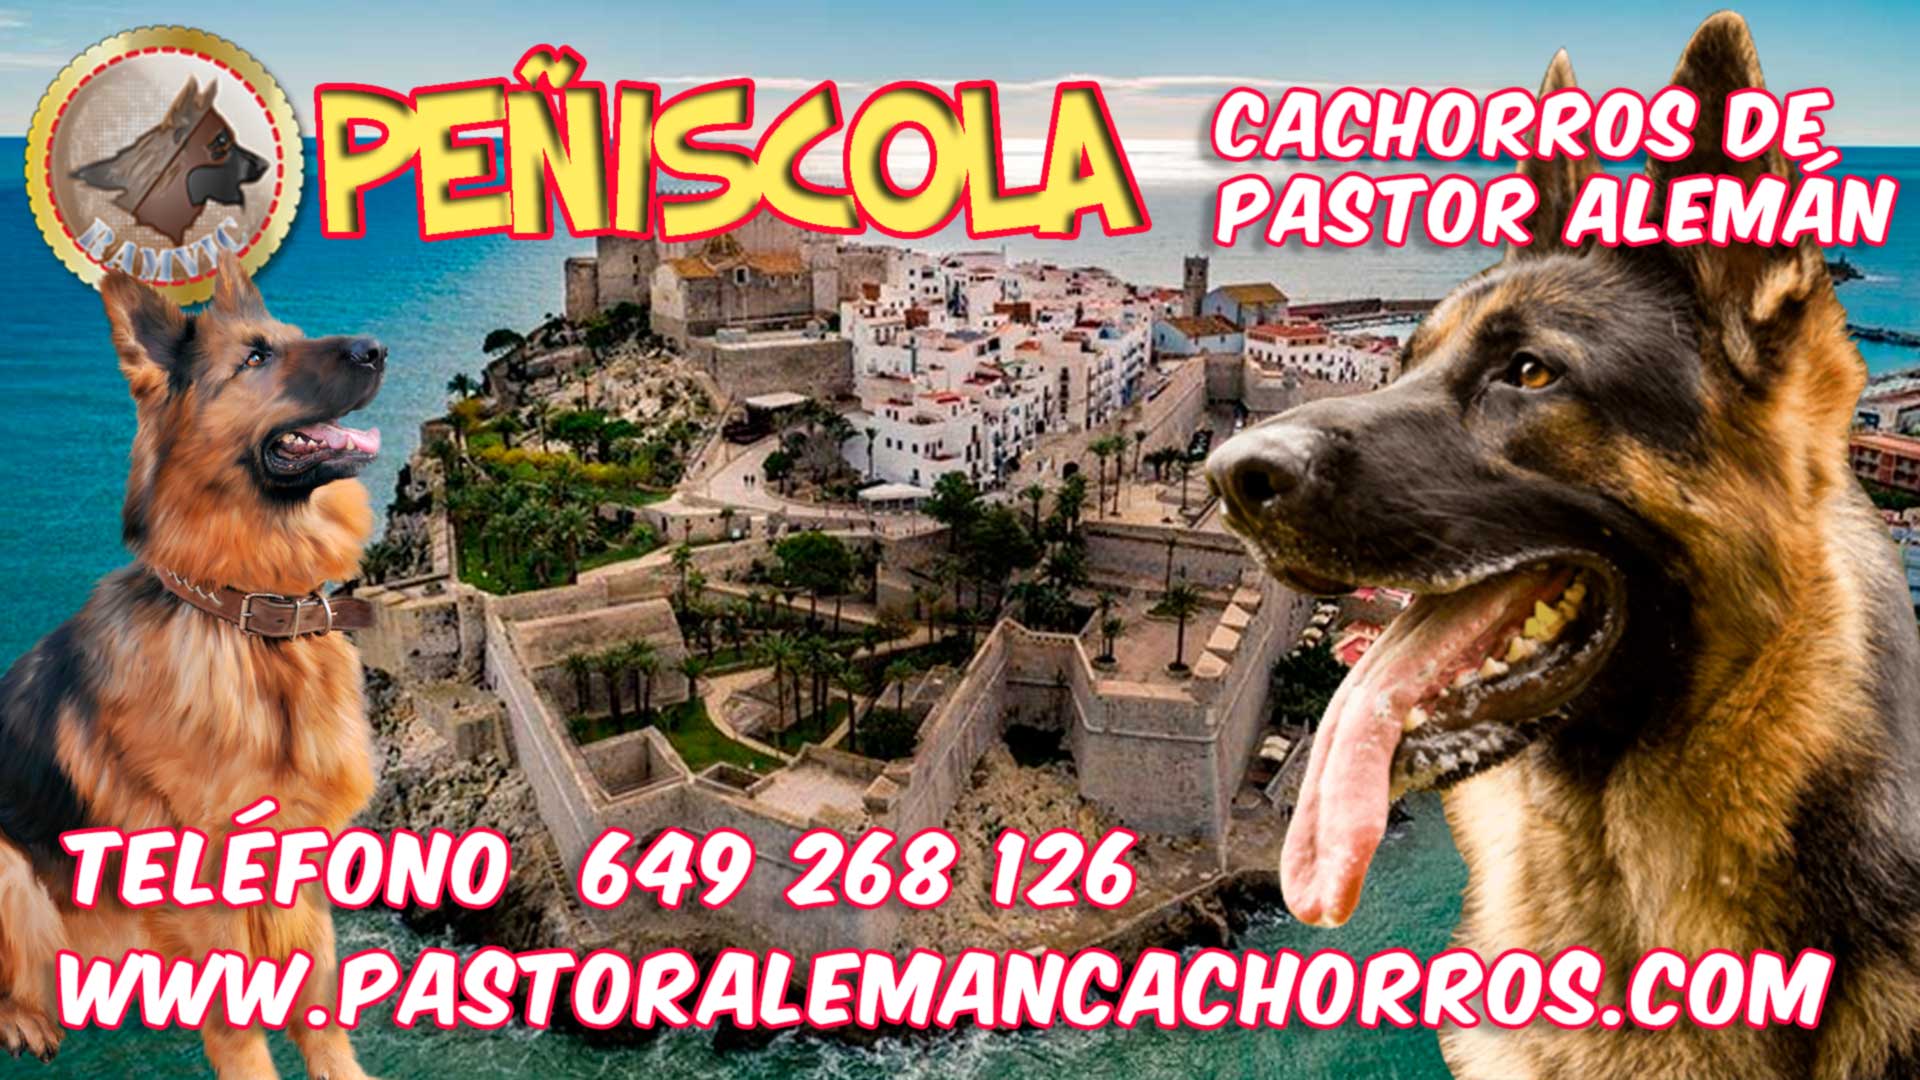 Cachorros de Pastor Alemán en Peñiscola